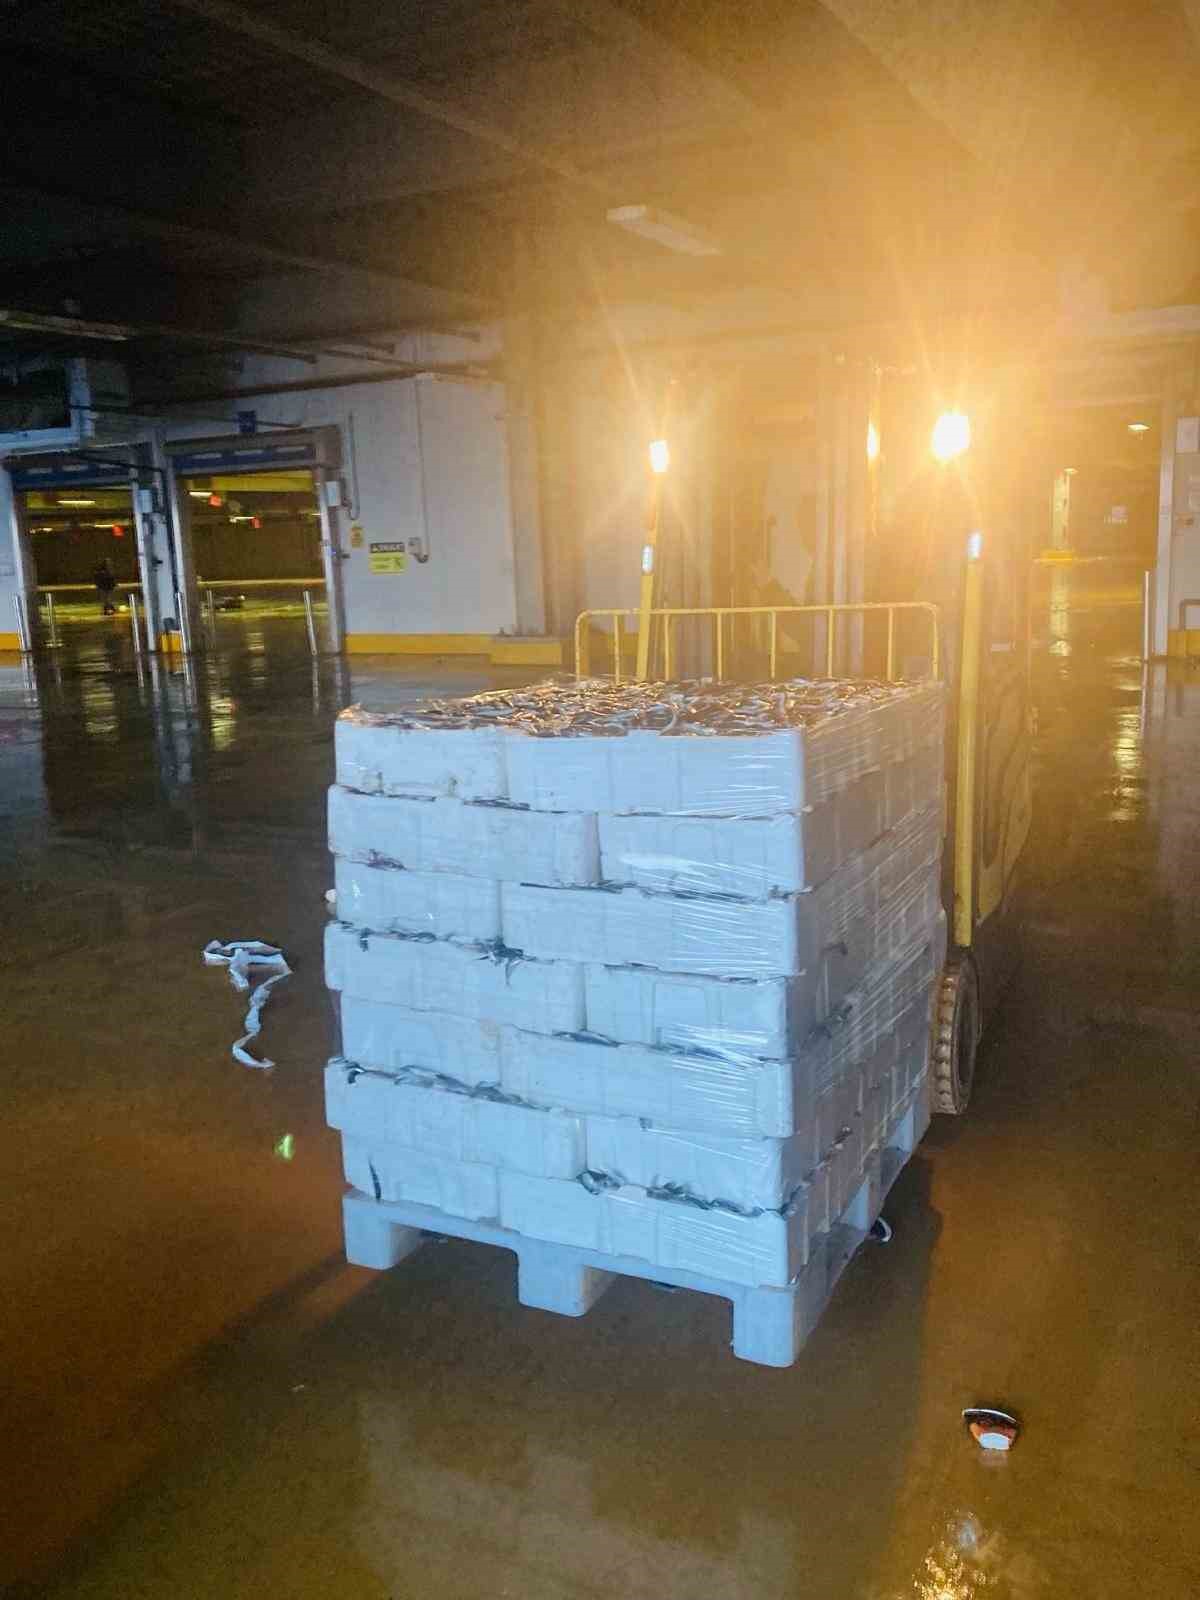 İstanbul’da kaçak avlanmış 8 ton istavrit balığı ele geçirildi
